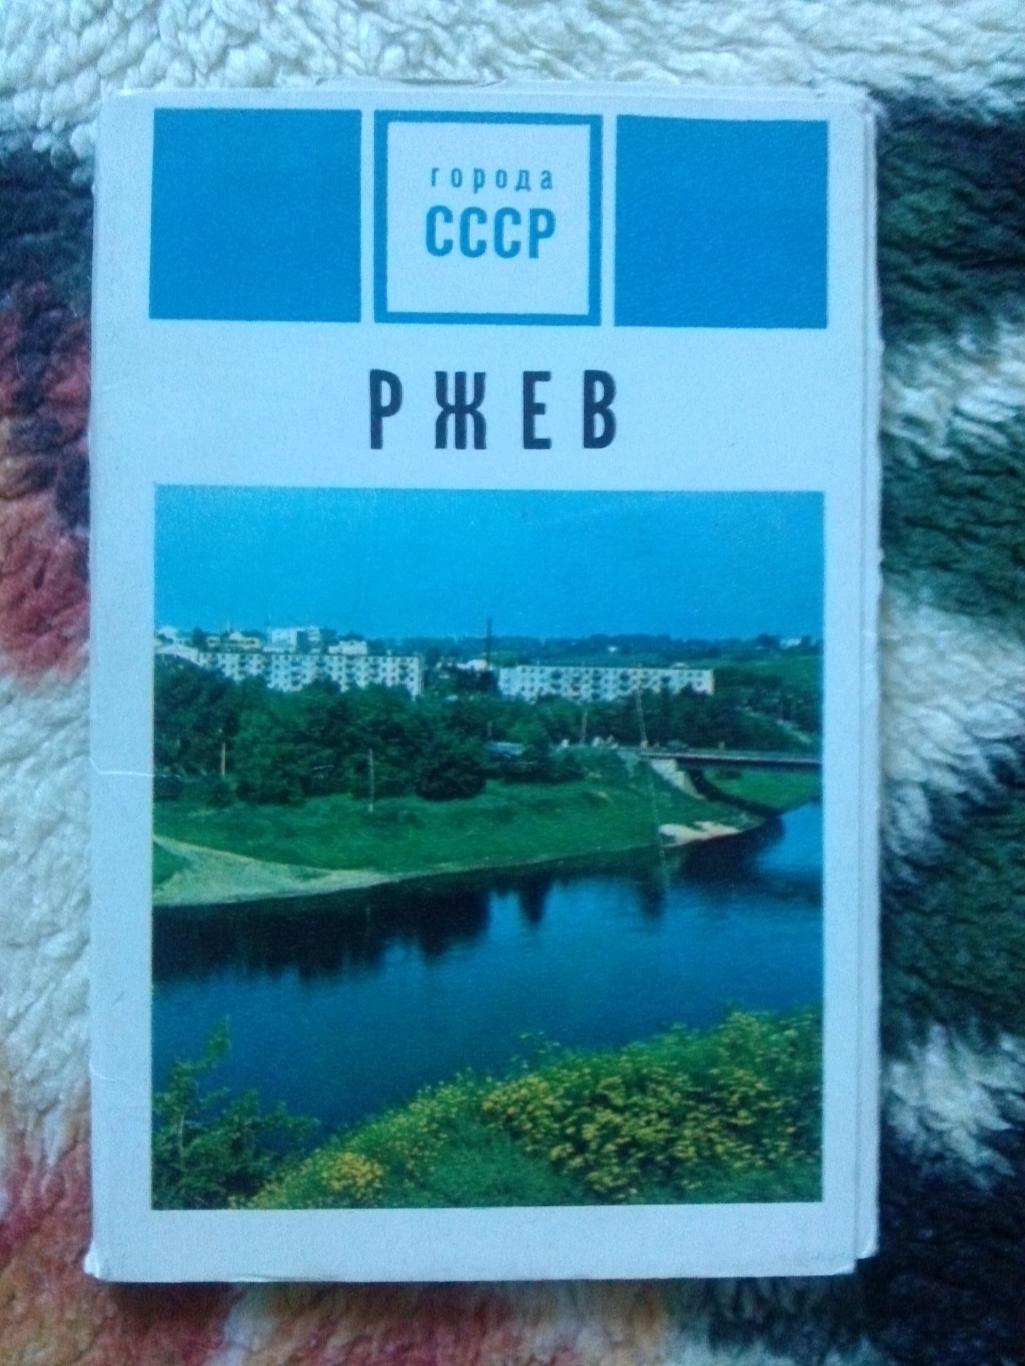 Города СССР : Ржев 1973 г. полный набор - 15 открыток (чистые , в идеале) Пушка